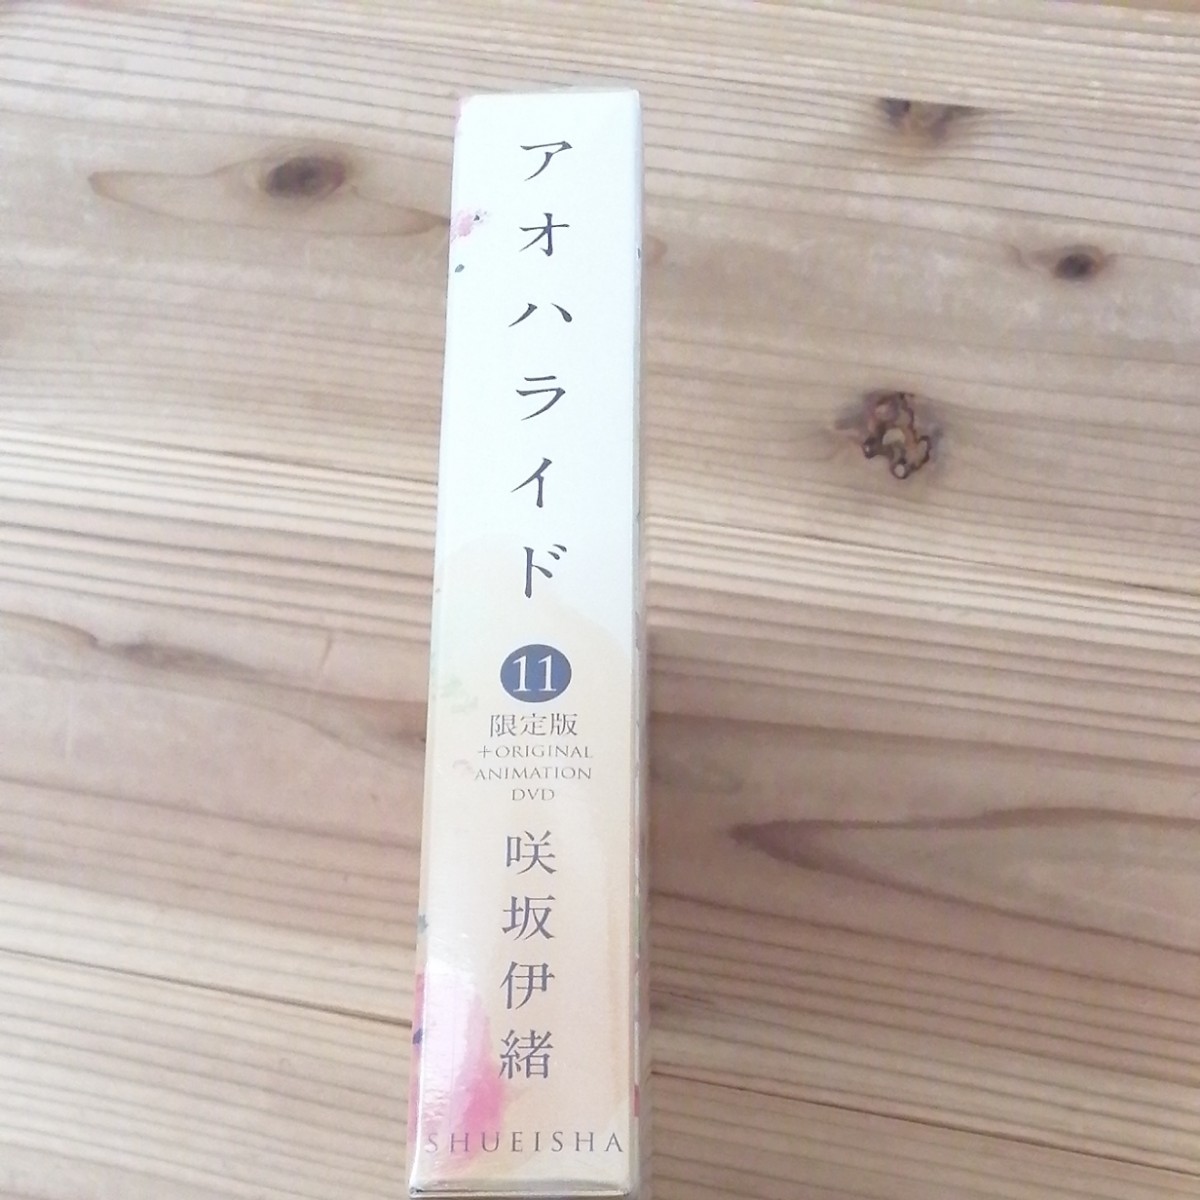 アオハライド 11巻+DVD 限定盤